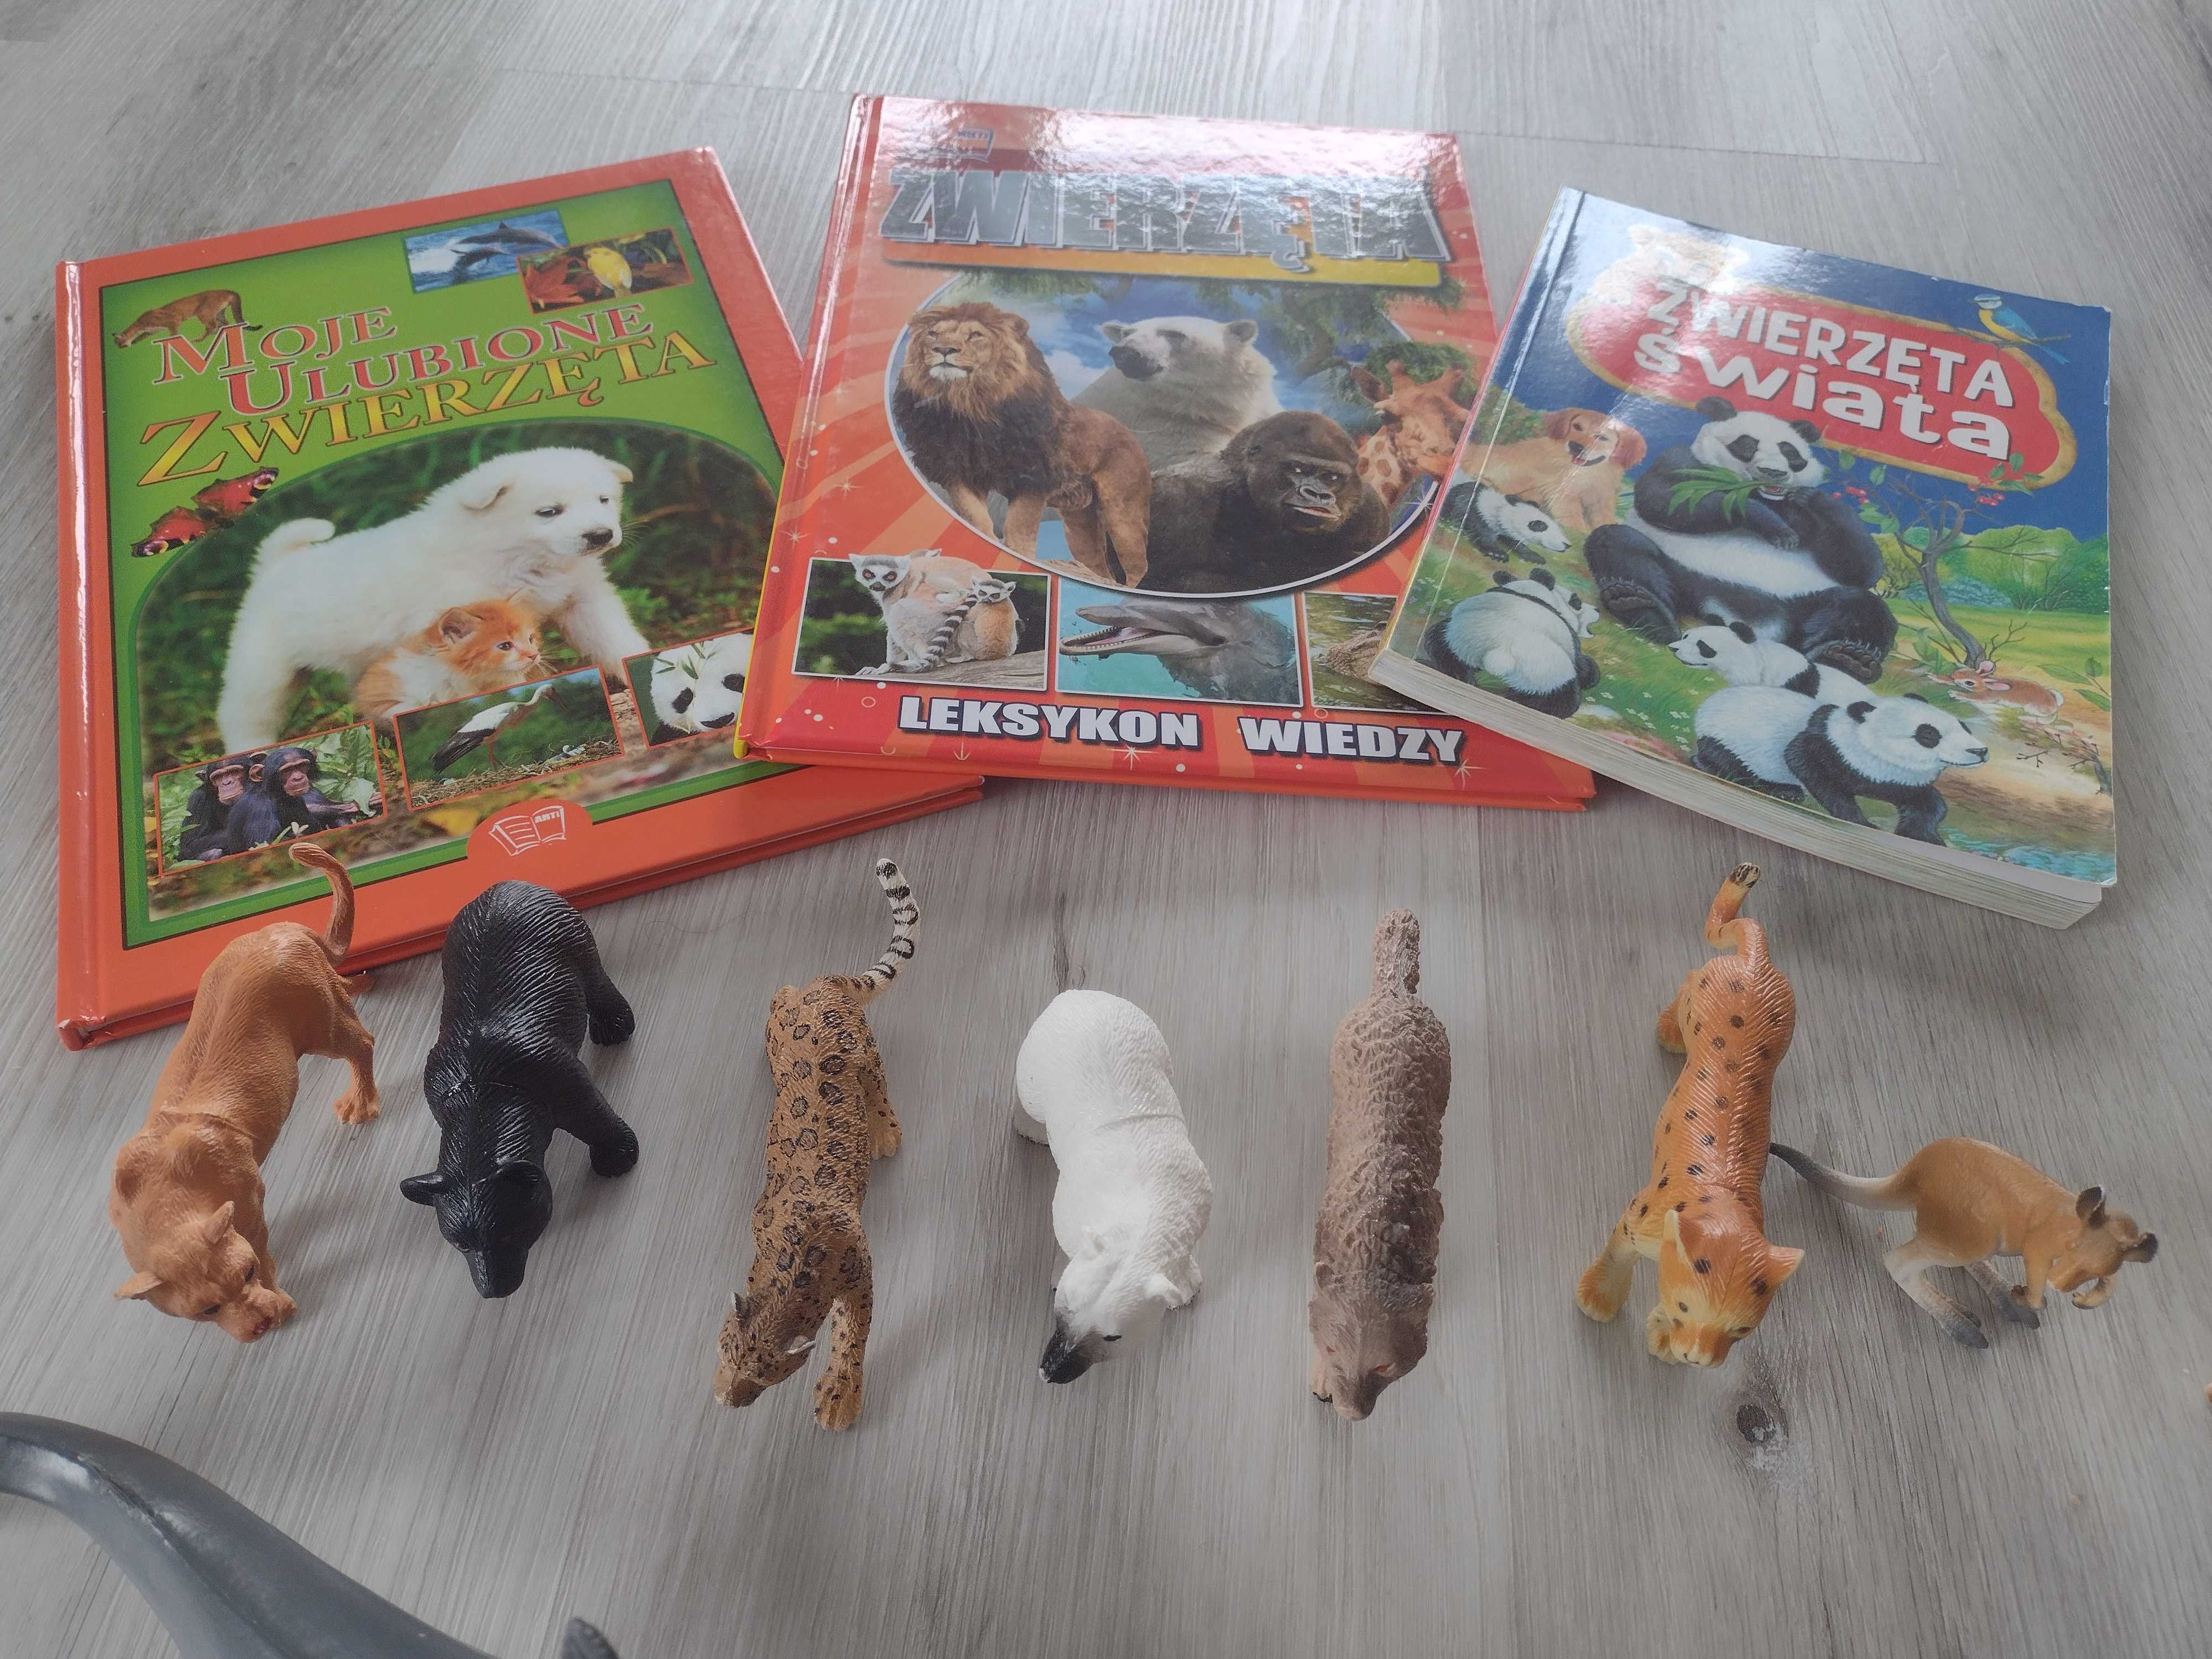 zestaw dla miłośnika zwierzątek książki plus figurki zwierząt